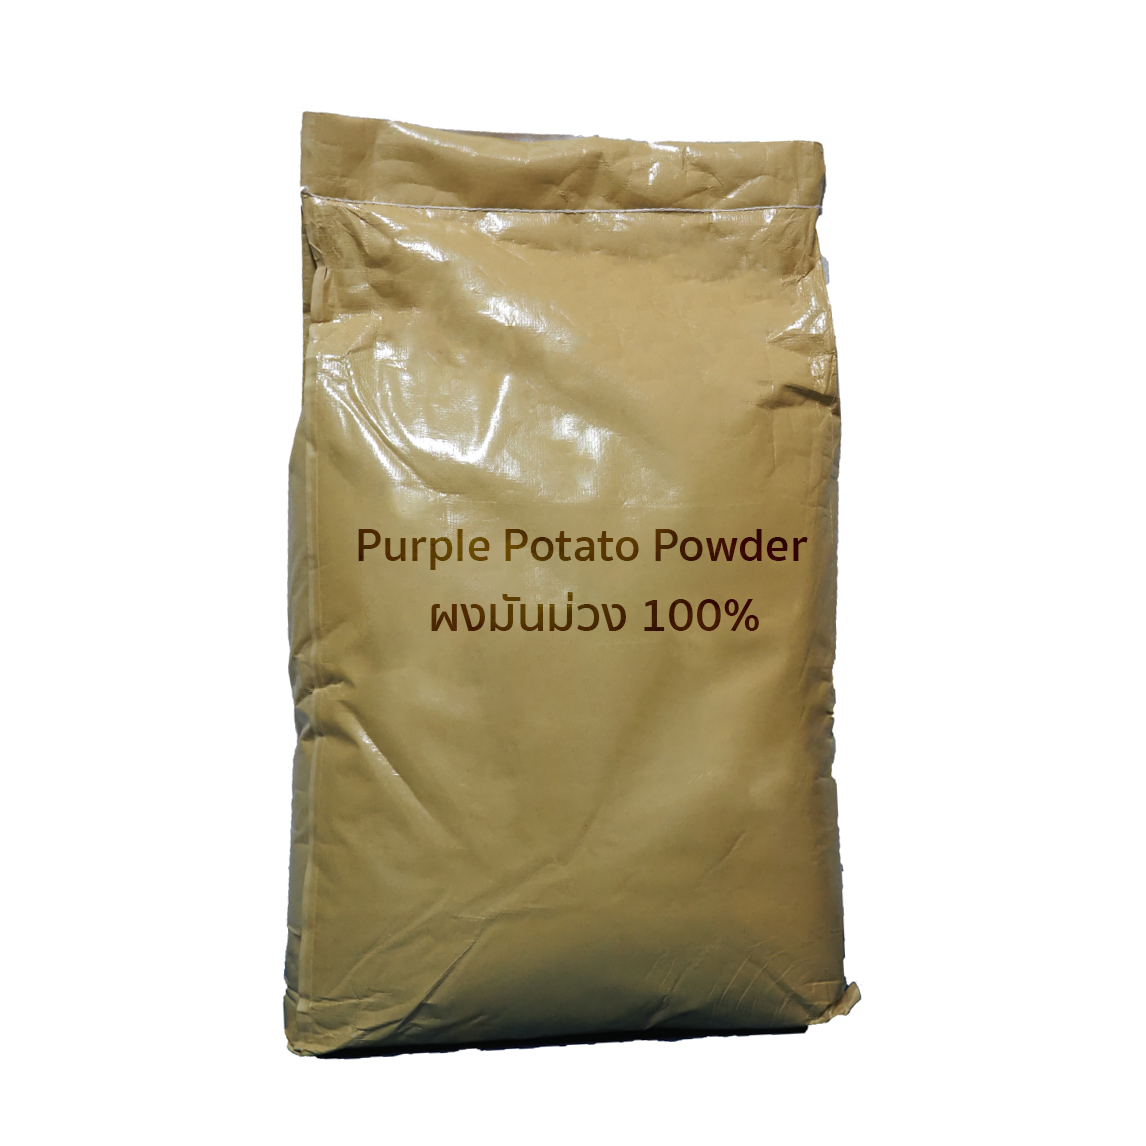 มันม่วงผง 100% (25 กิโลกรัม) (Purple Potato Powder)